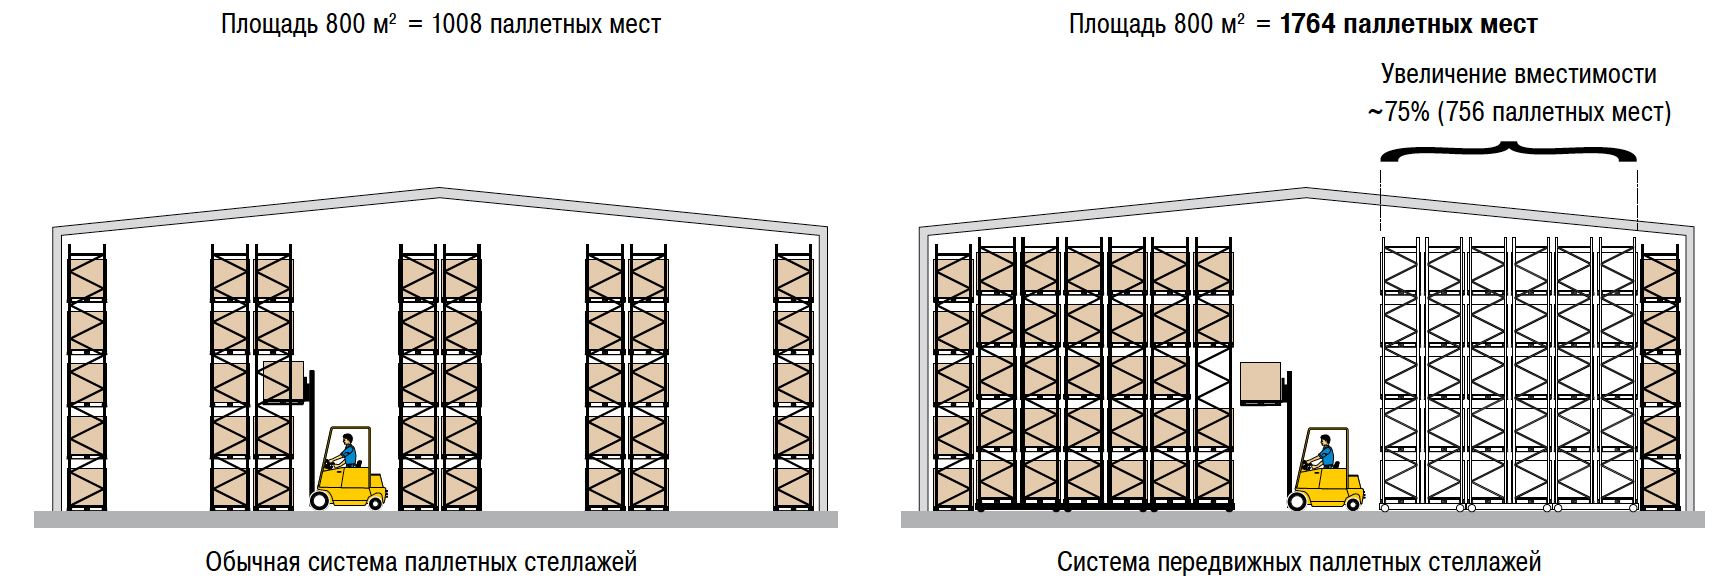 Площадь стеллажей. Складской стеллажный комплекс (система r 4000). Схема расстановки паллетных стеллажей. Схема расстановки складских стеллажей. Стеллаж паллетный (Размеры (ВXШXГ) В мм: 3000x6675x1100).